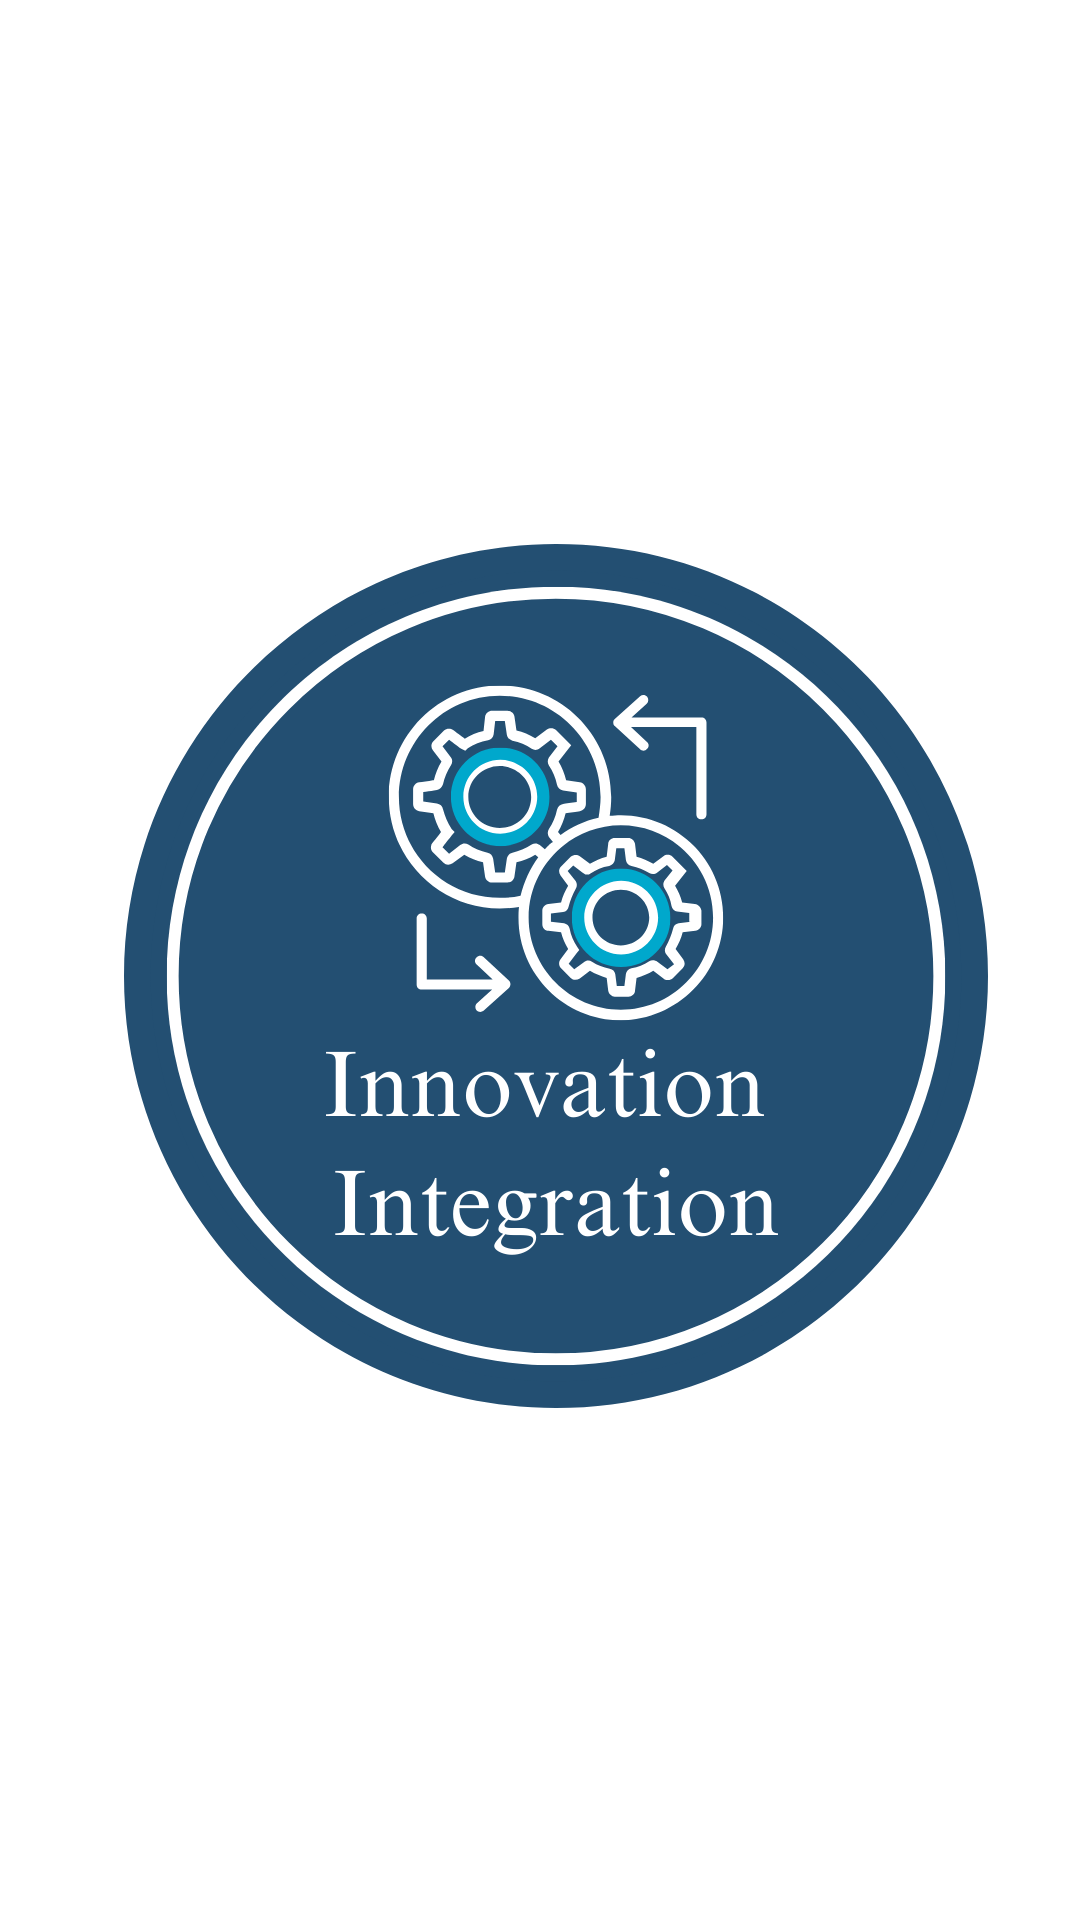 Innovation Integration